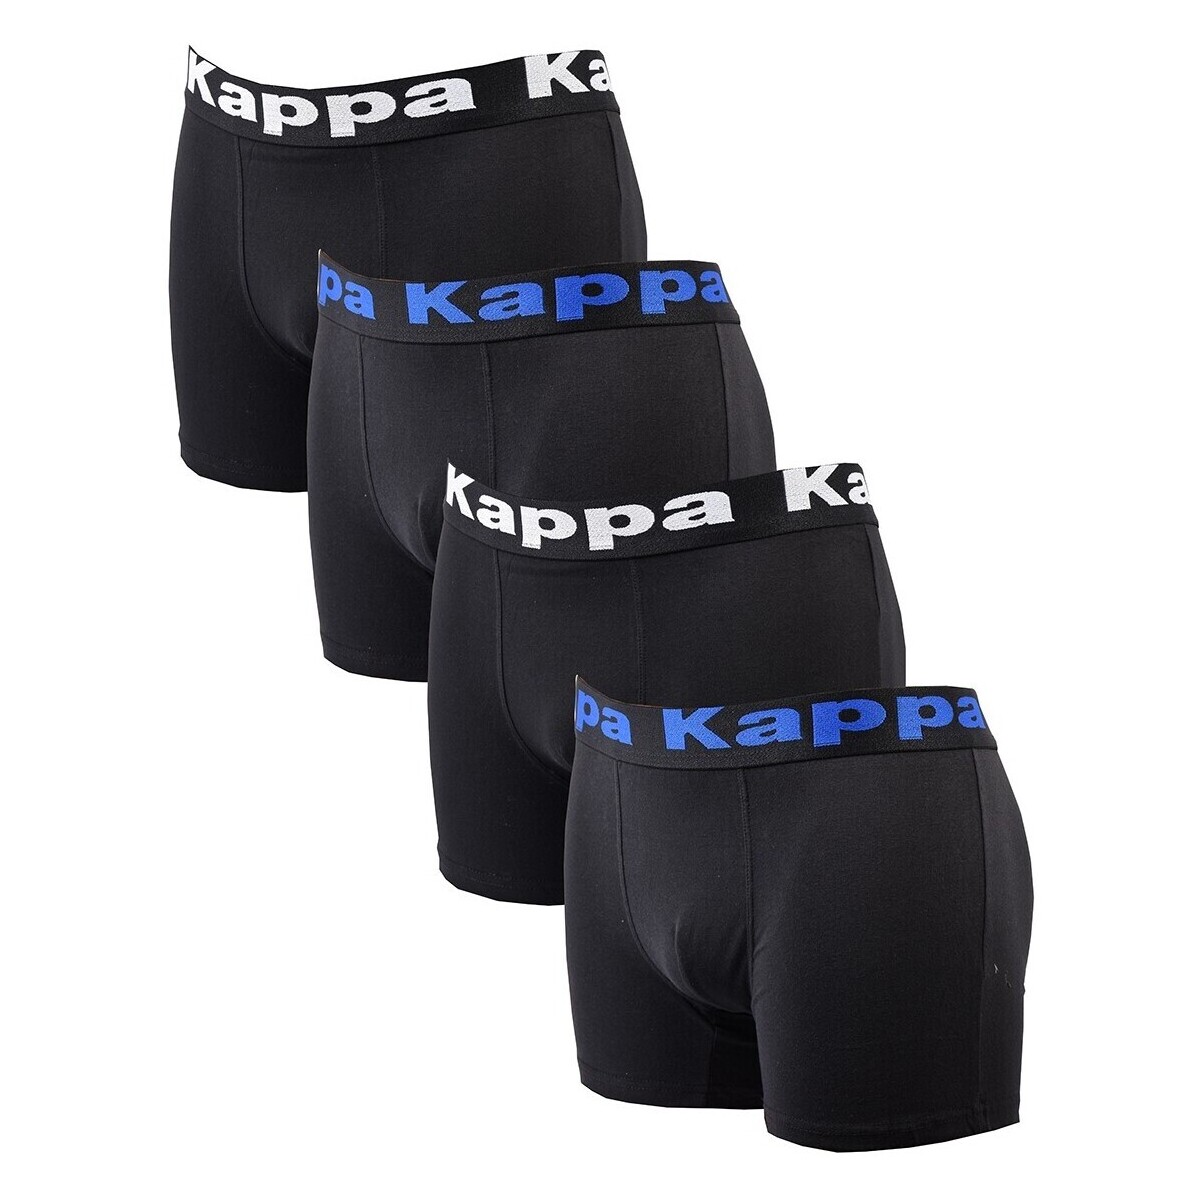 Kappa Multicolore Pack de 4 0230 EFEvU9iW